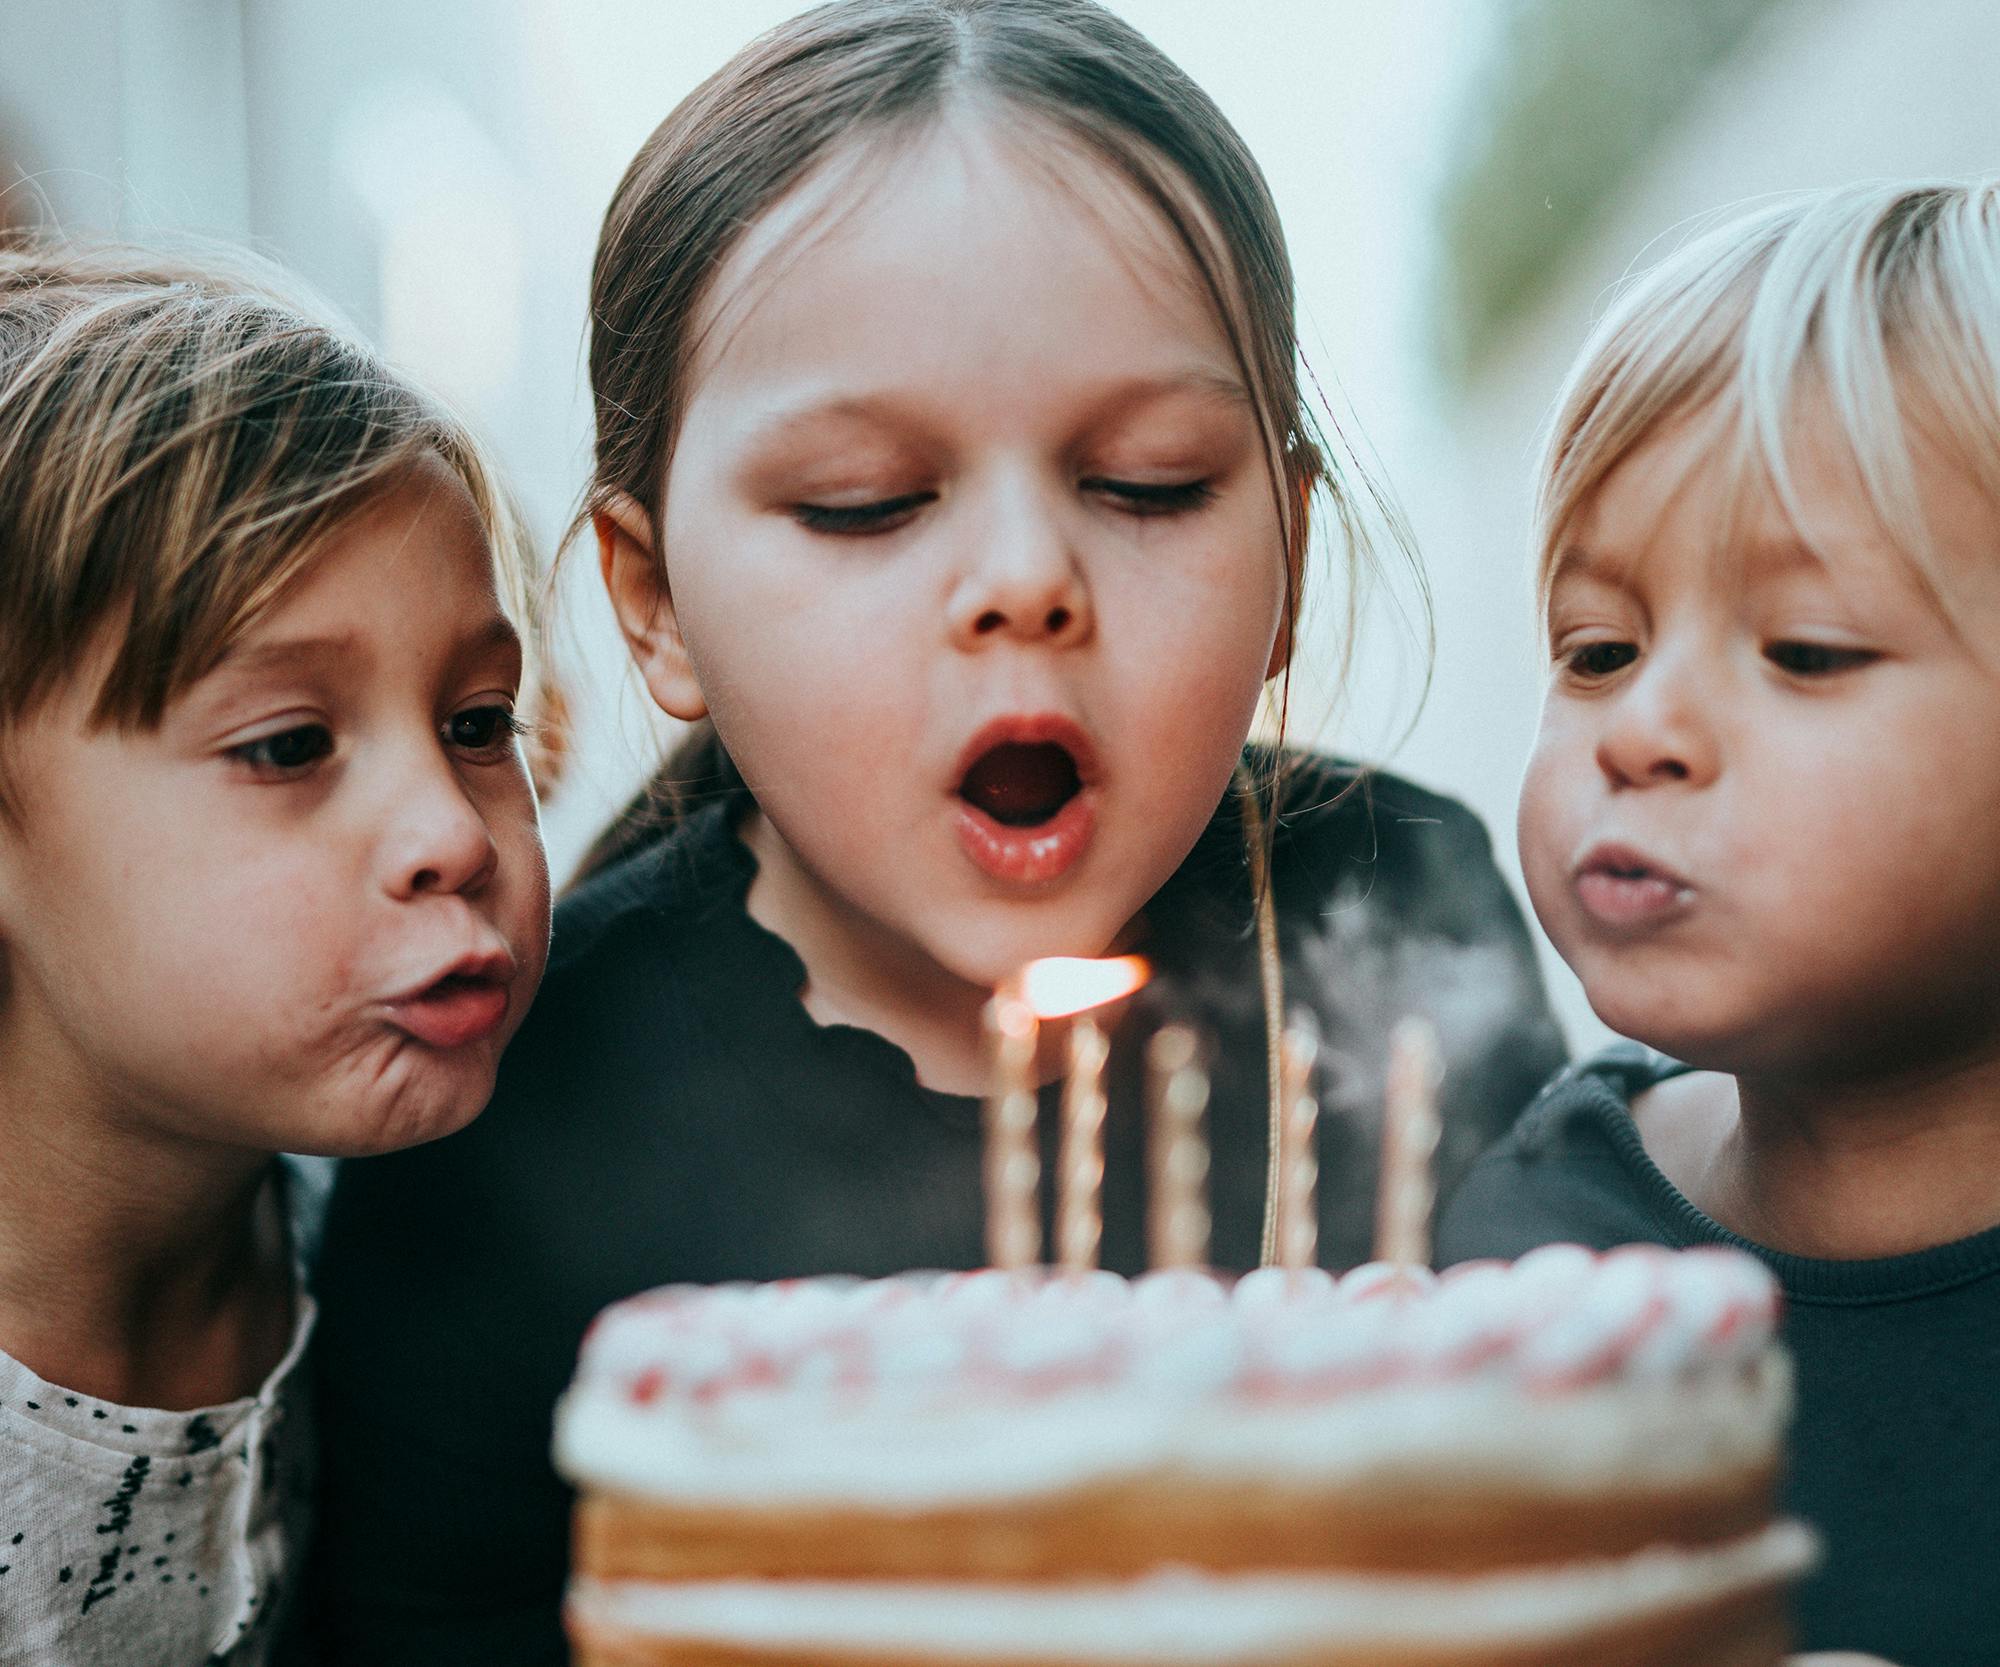 Anniversaires d'enfants : 4 idées pour organiser une fête inoubliable